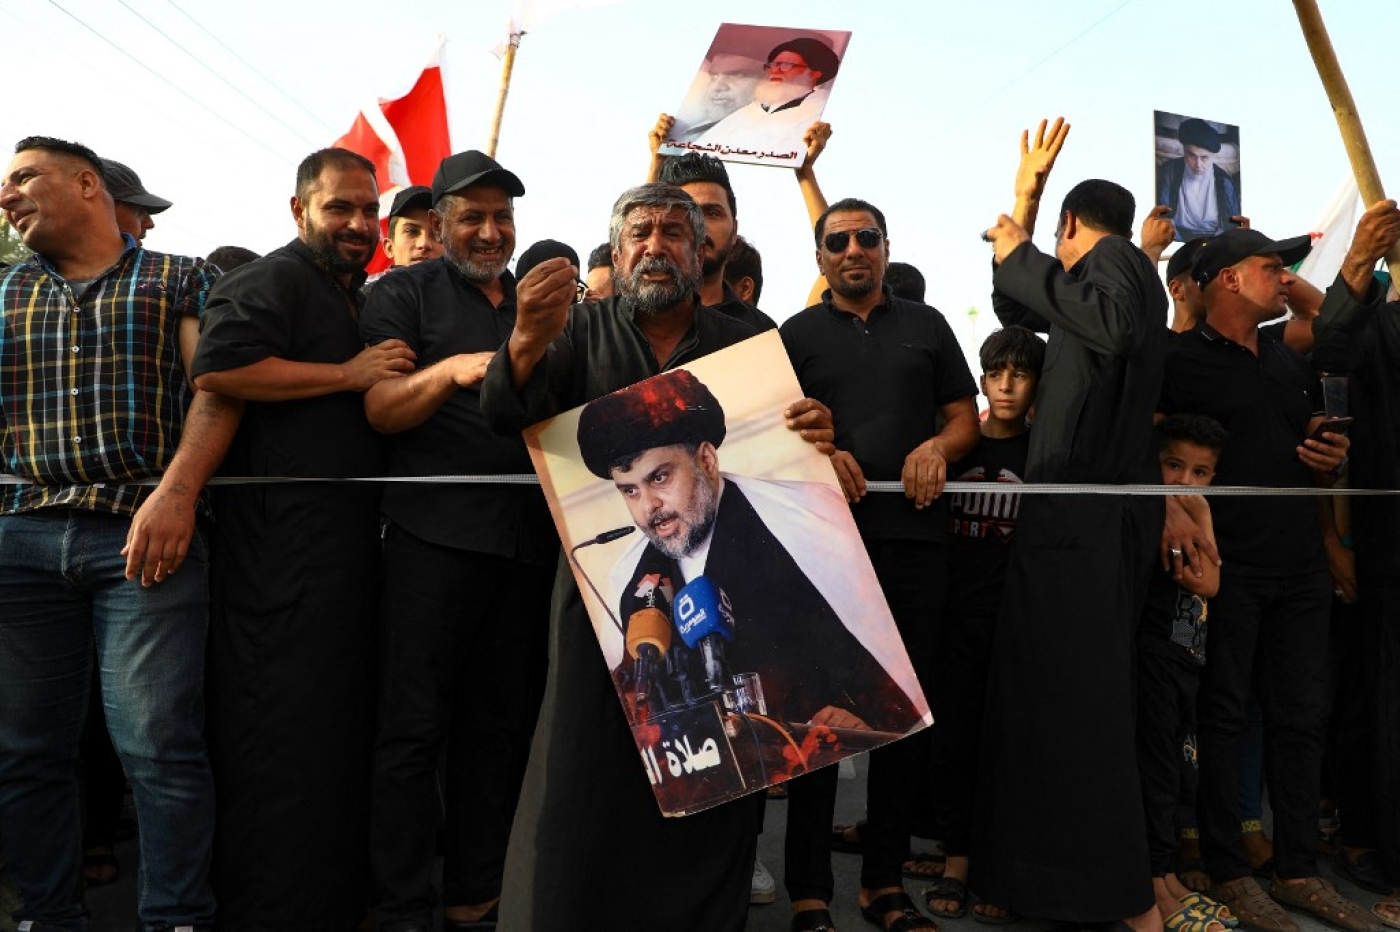 Le 12 aout, des partisans du religieux chiite Moqtada al-Sadr protestent à Nasiriyah contre la nomination d’un faction chiite rivale pour le poste de Premier ministre (AFP/Asad Niazi)